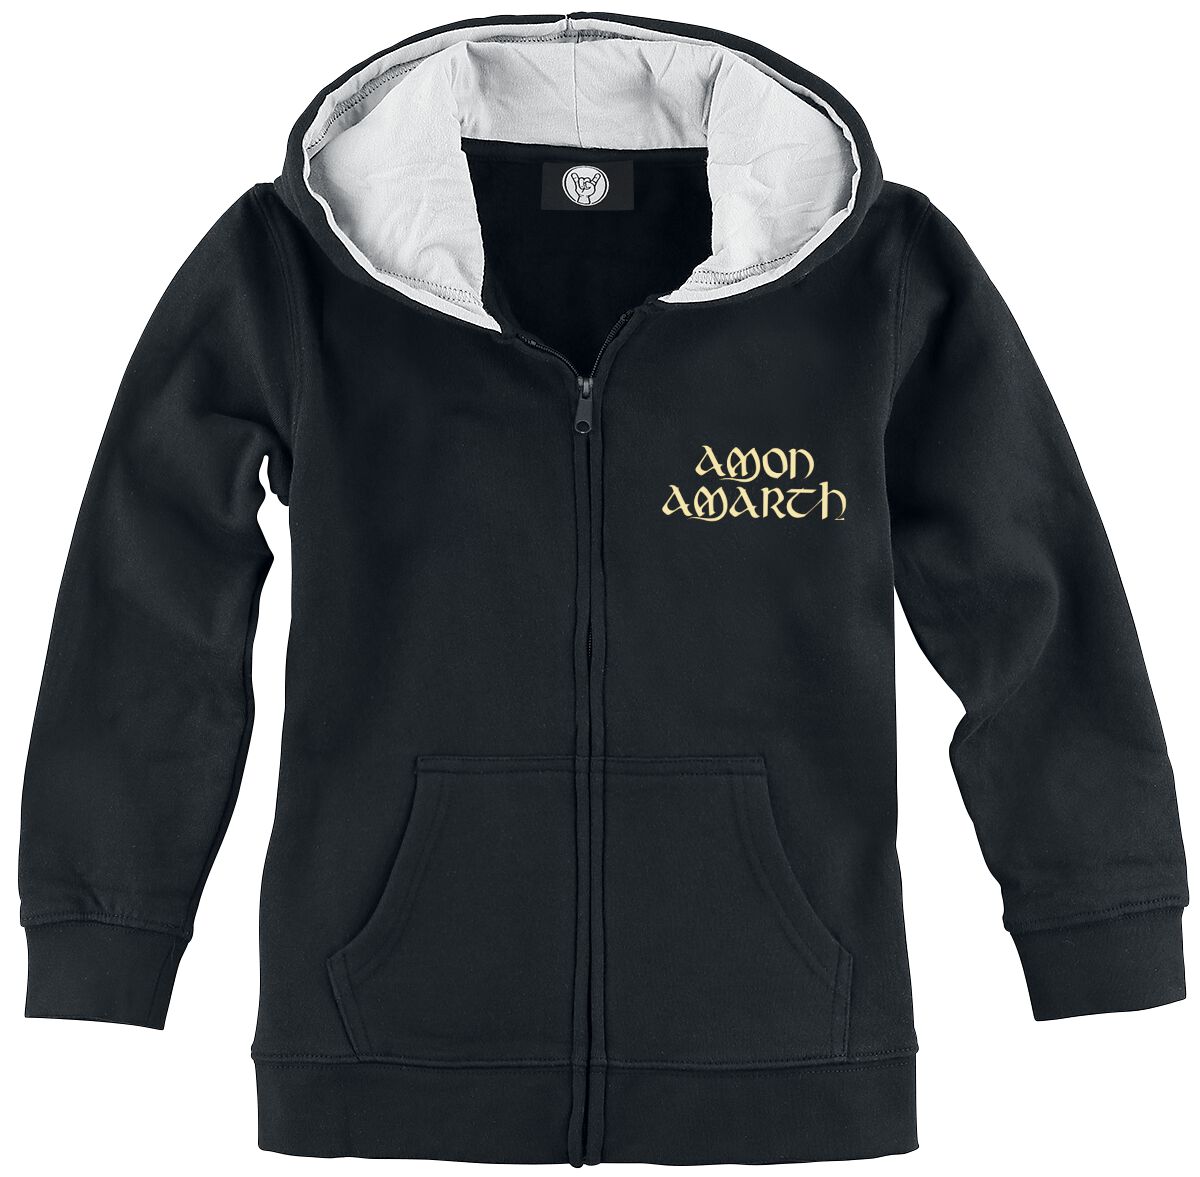 Amon Amarth Kinder-Kapuzenjacke für Kleinkinder - Metal-Kids - Little Berserker - für Mädchen & Jungen - schwarz  - Lizenziertes Merchandise!